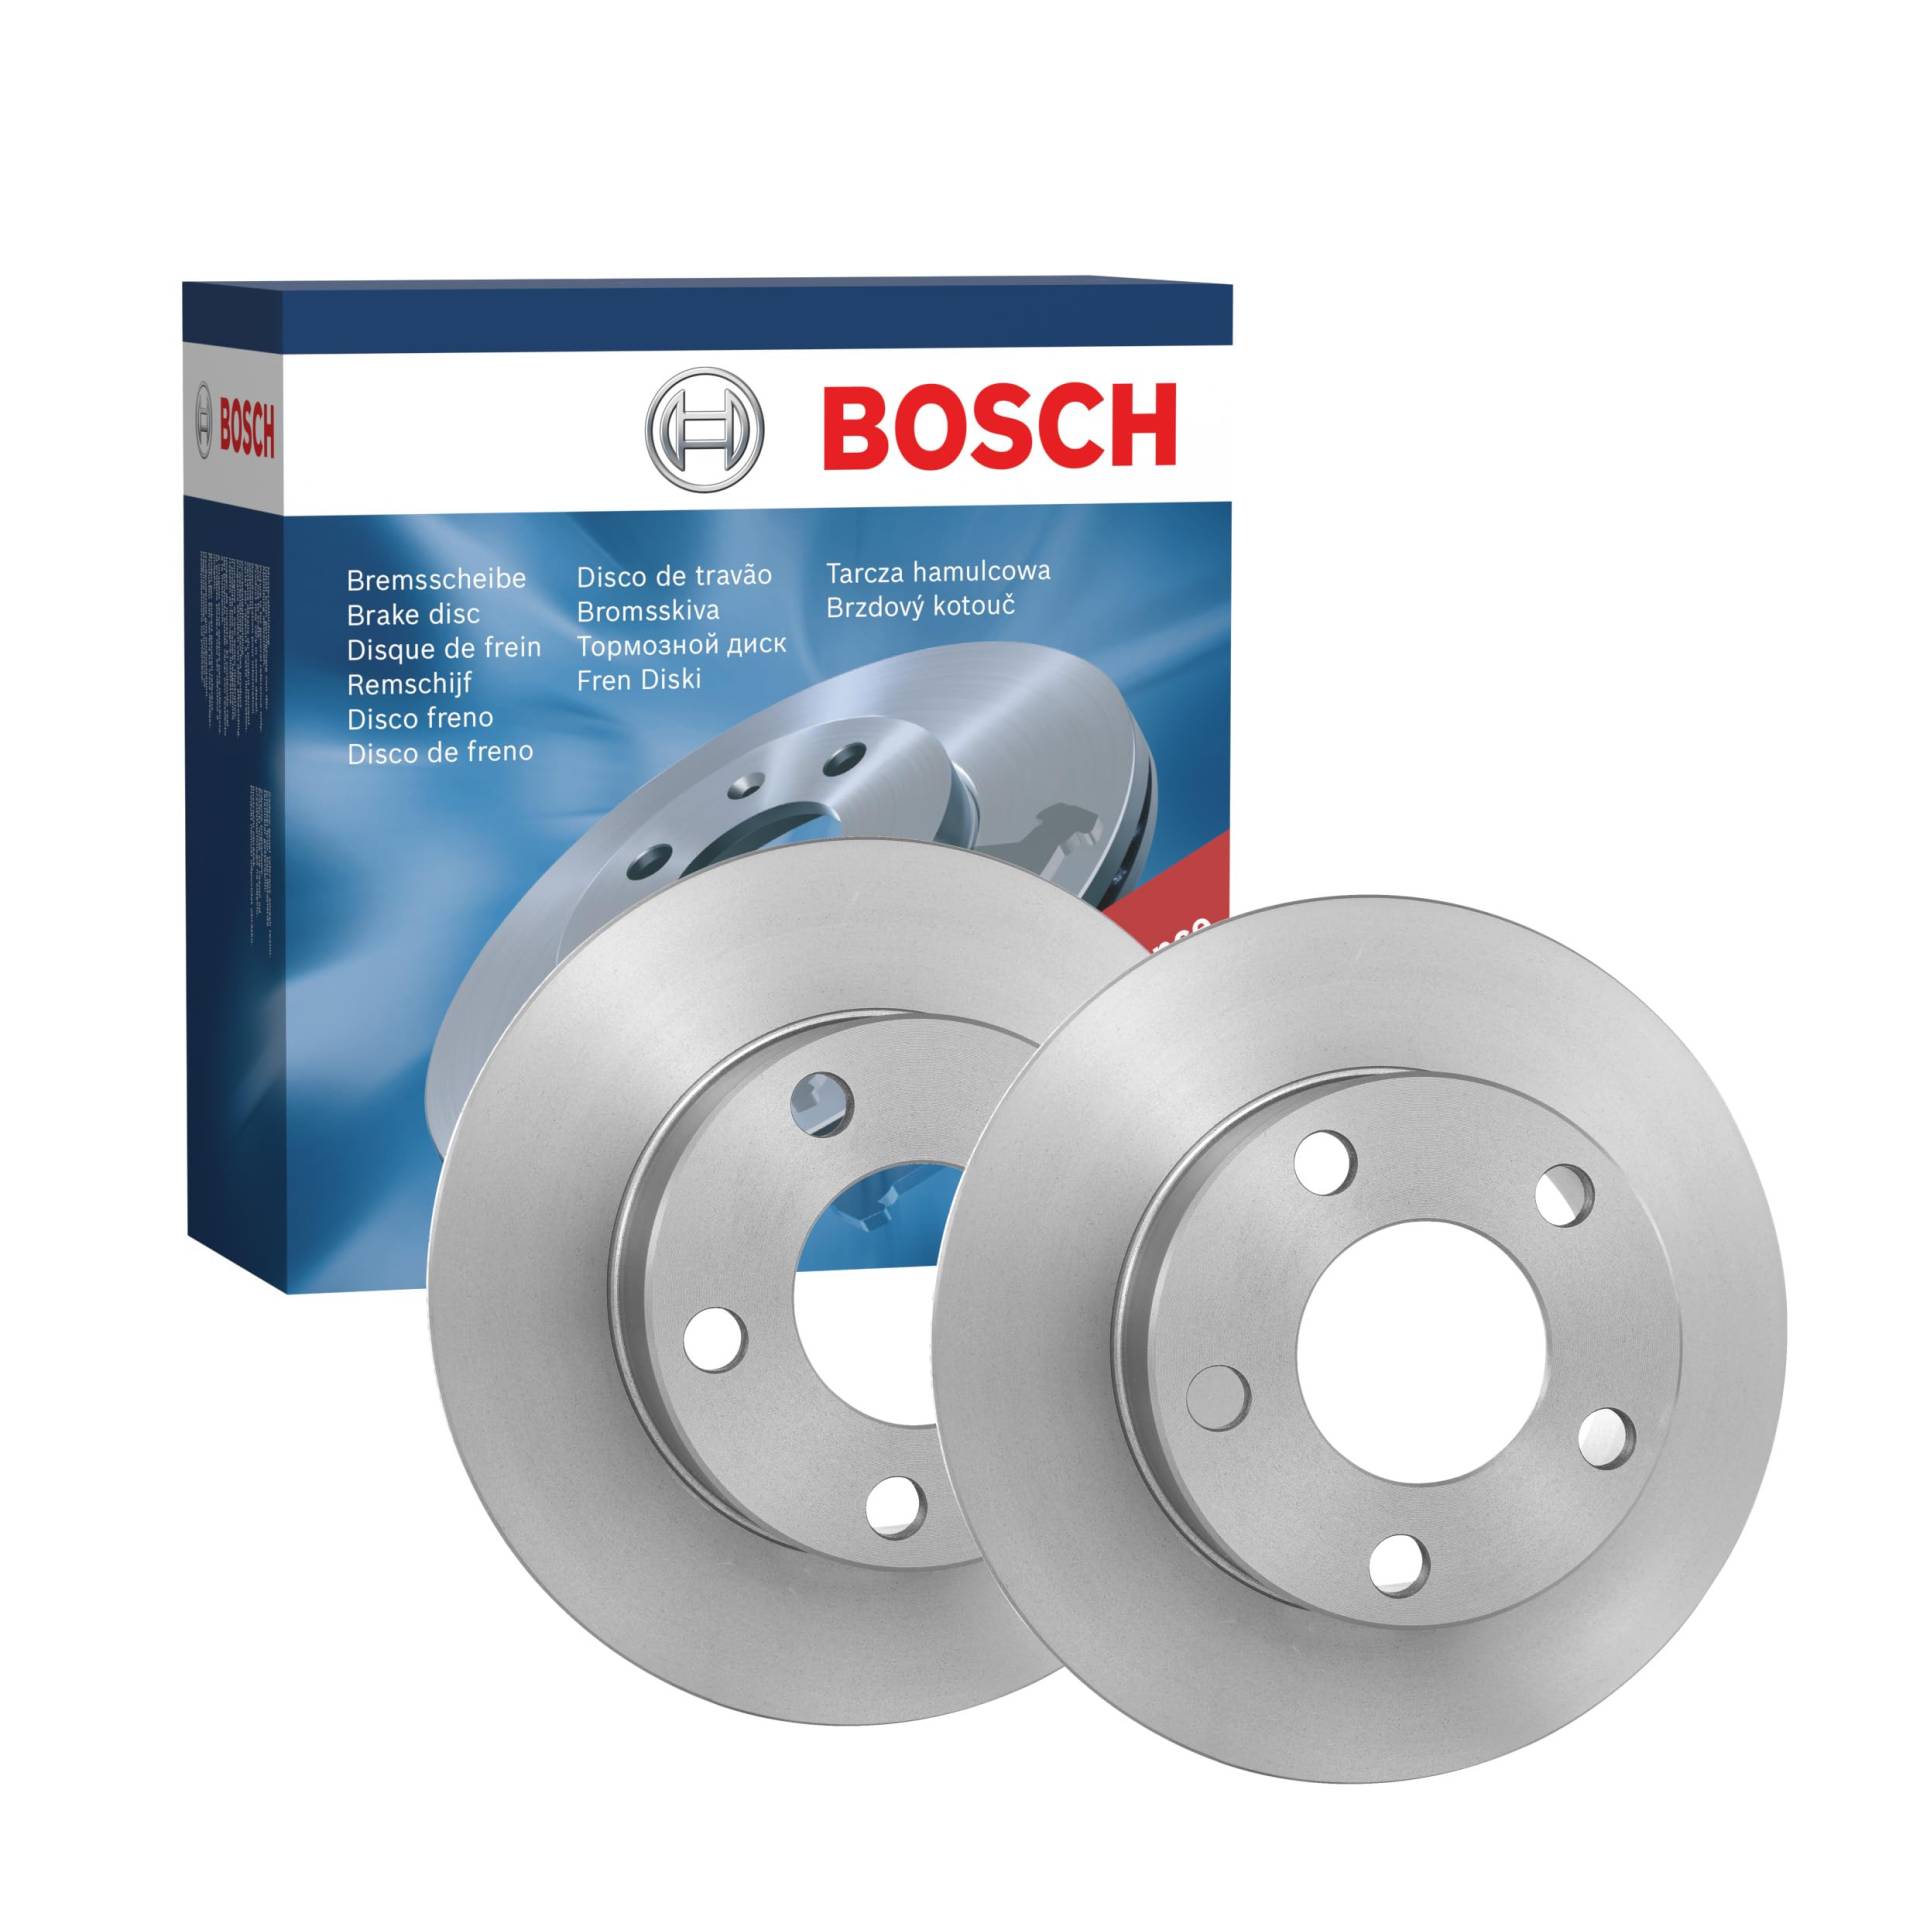 Bosch BD787 Bremsscheiben - Hinterachse - ECE-R90 Zertifizierung - zwei Bremsscheiben pro Set von Bosch Automotive